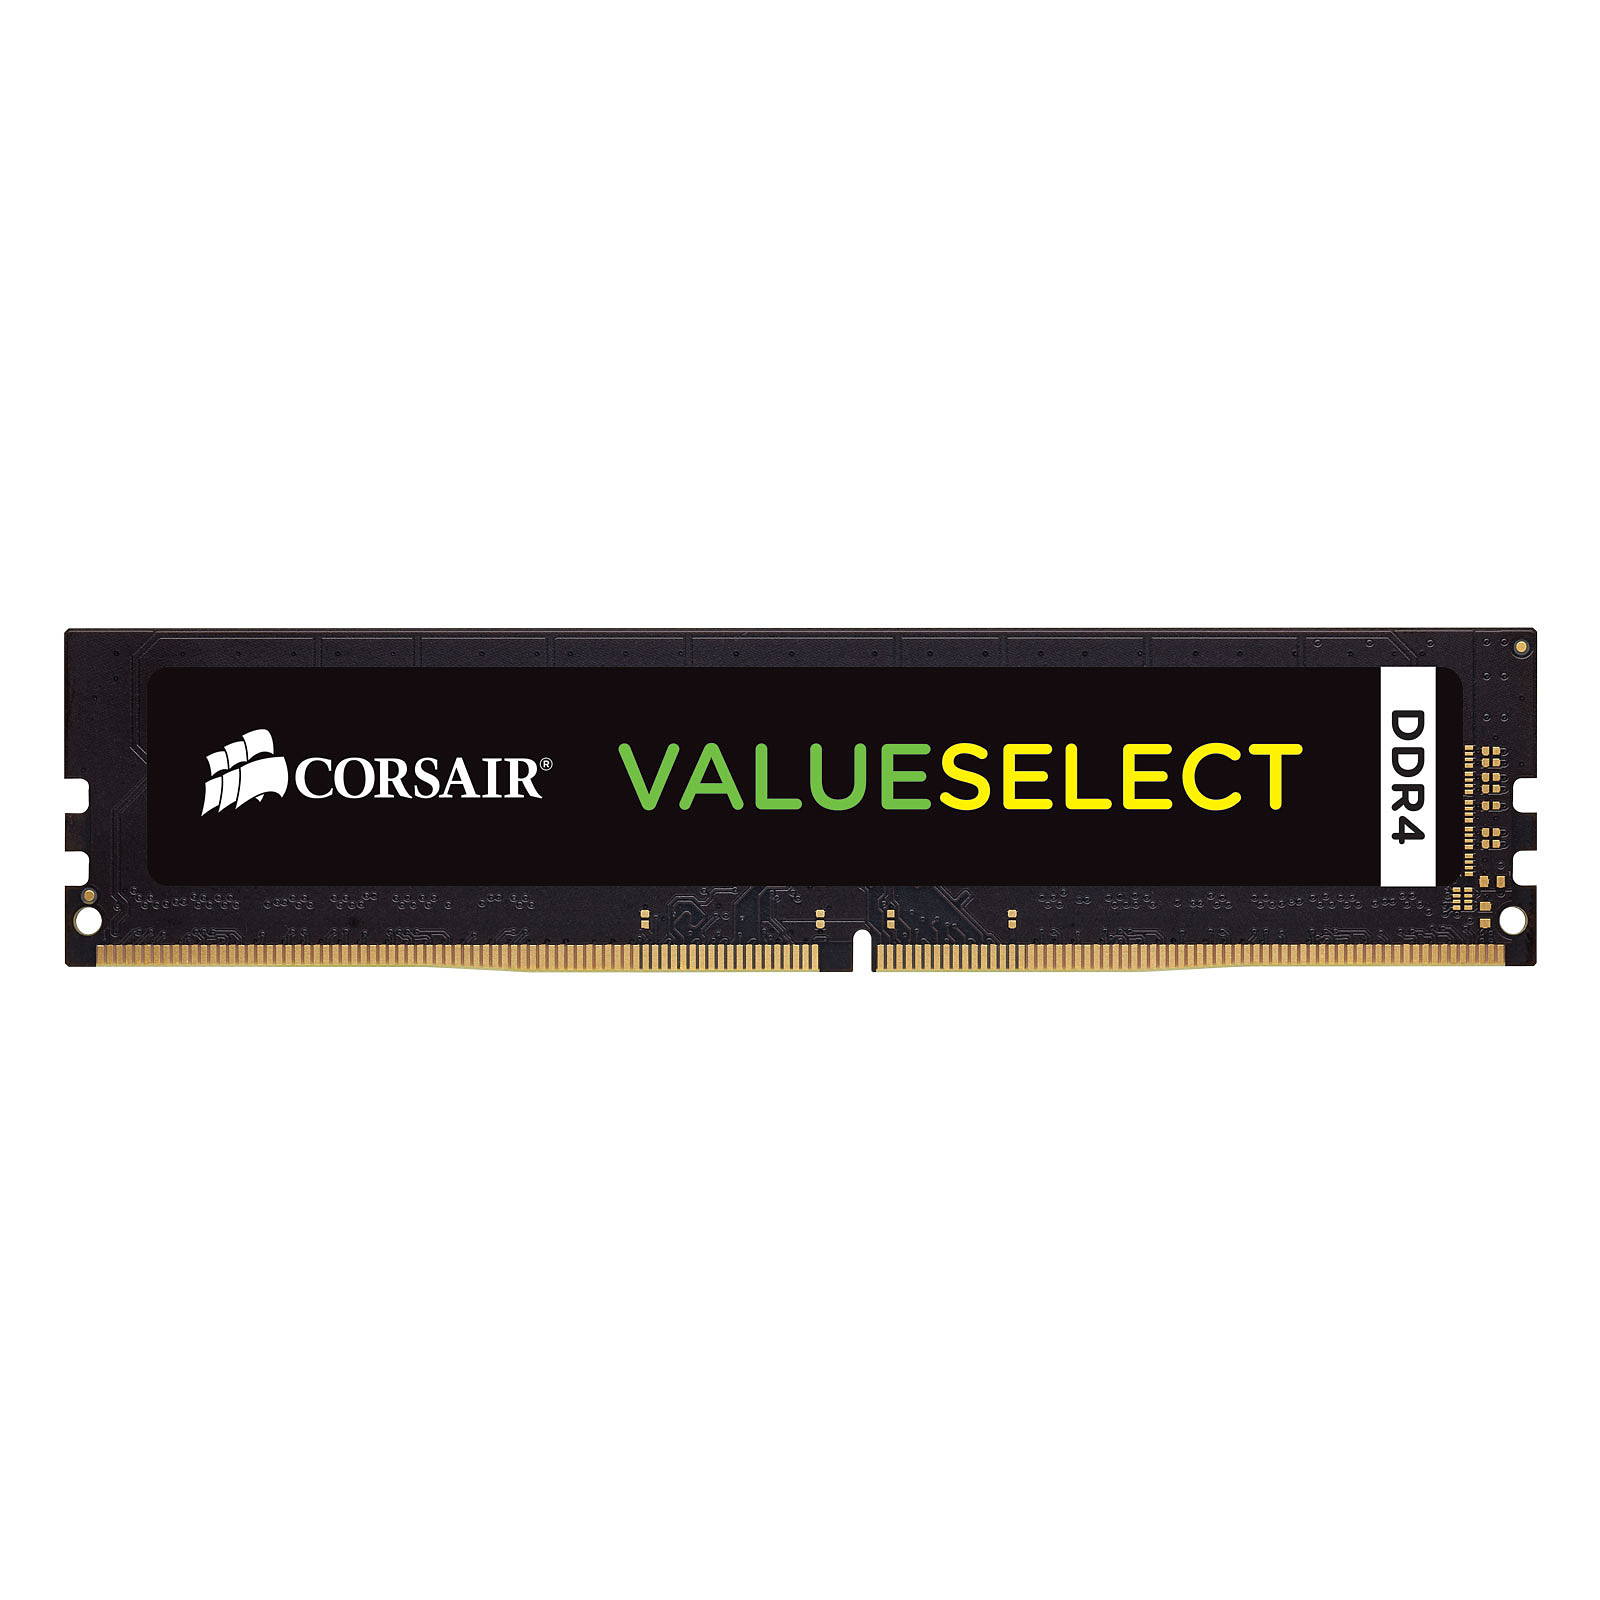 Corsair ValueSelect 4 Go DDR4 2133 MHz CL15 - Memoire PC Corsair - Occasion